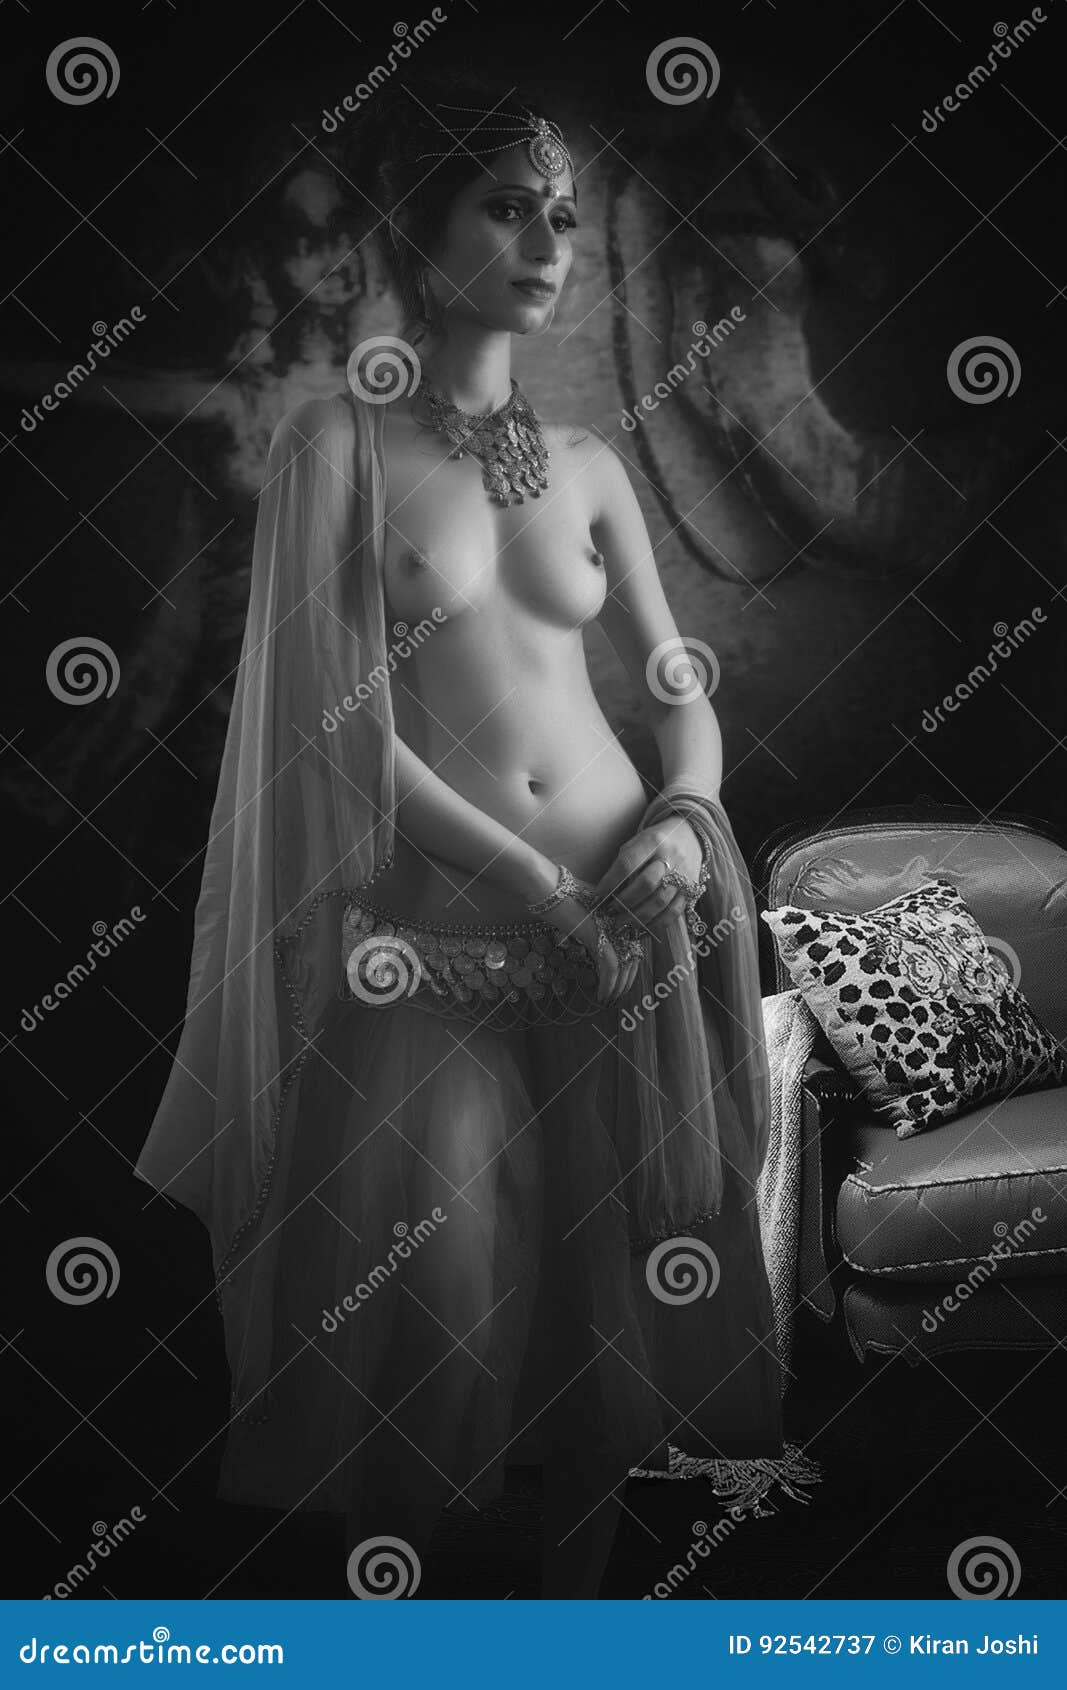 Erotica Arabian